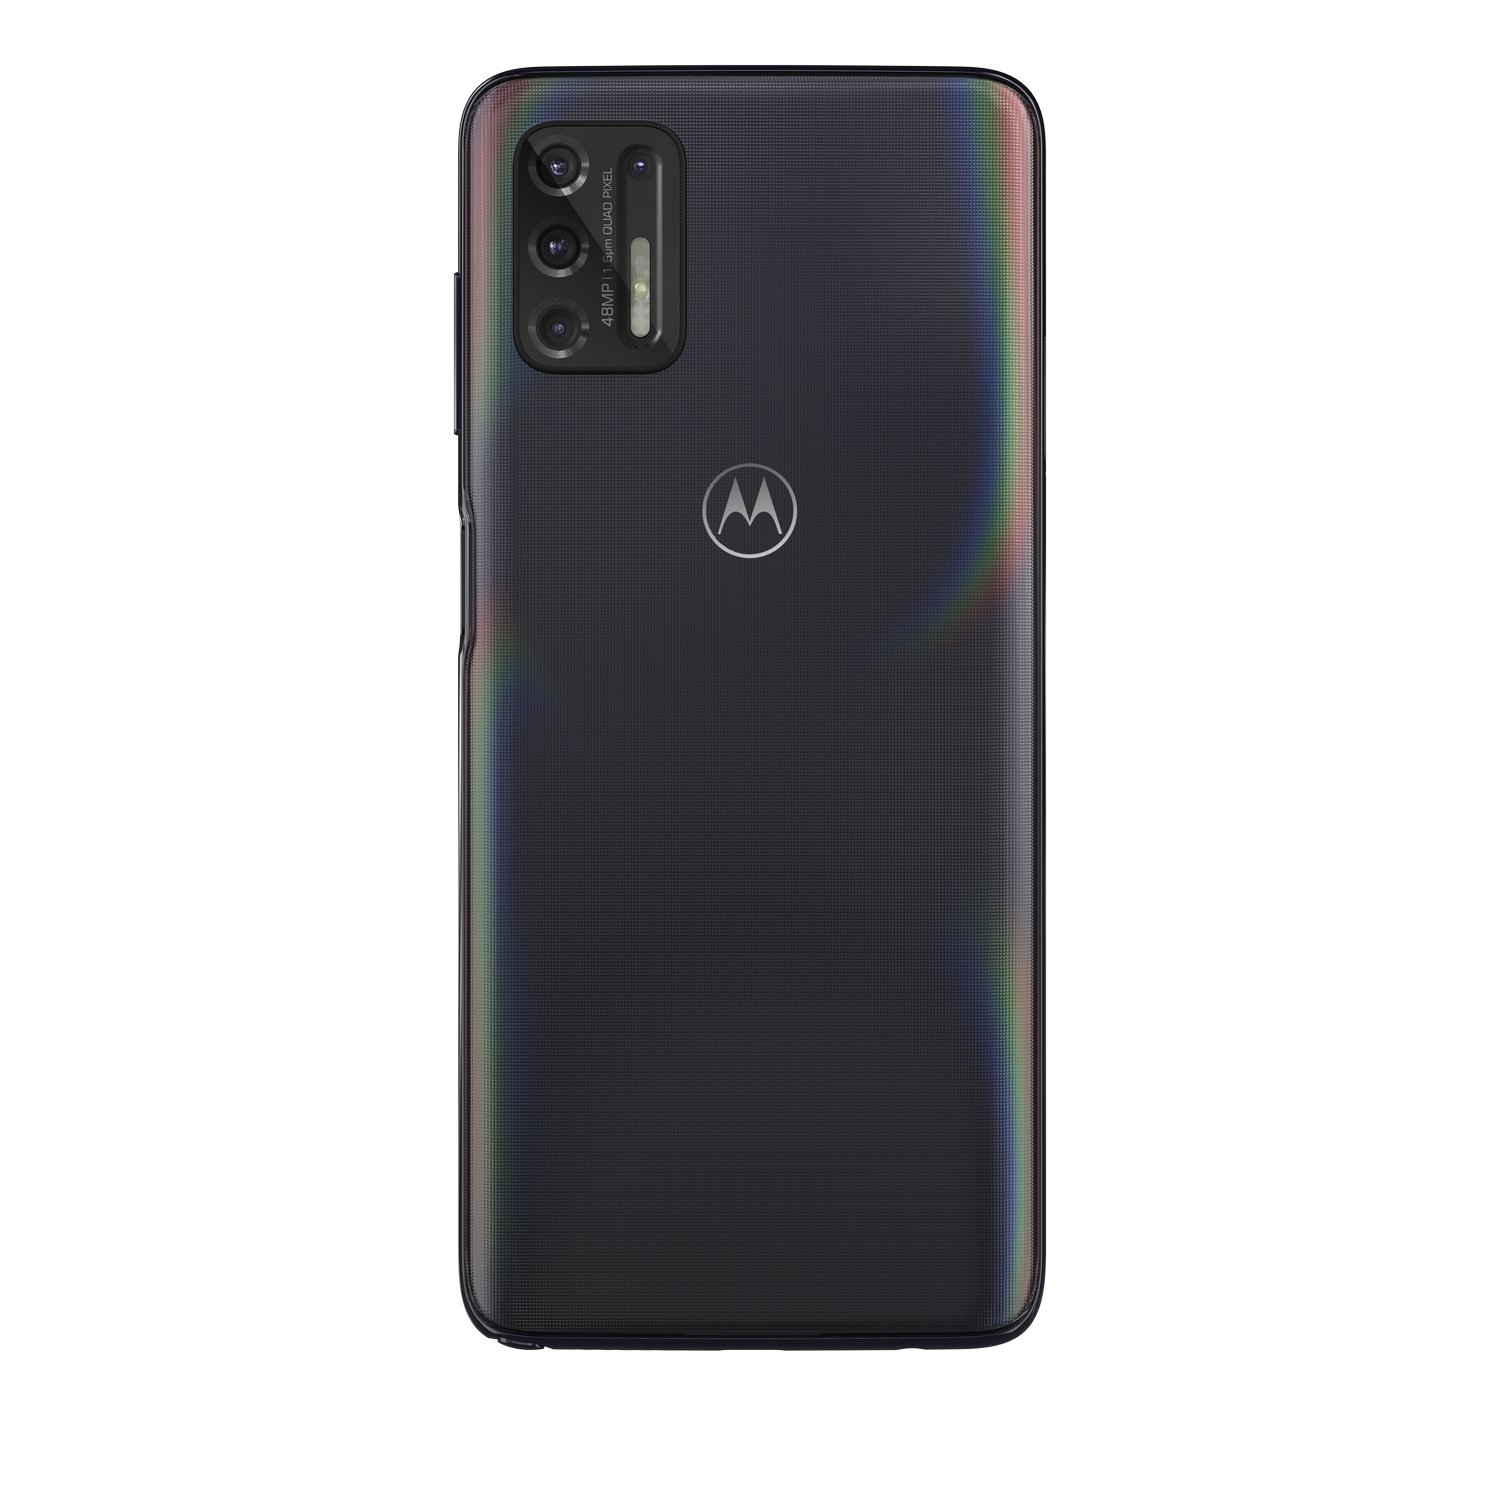 Motorola Moto G Stylus (2021) specs, review, release date